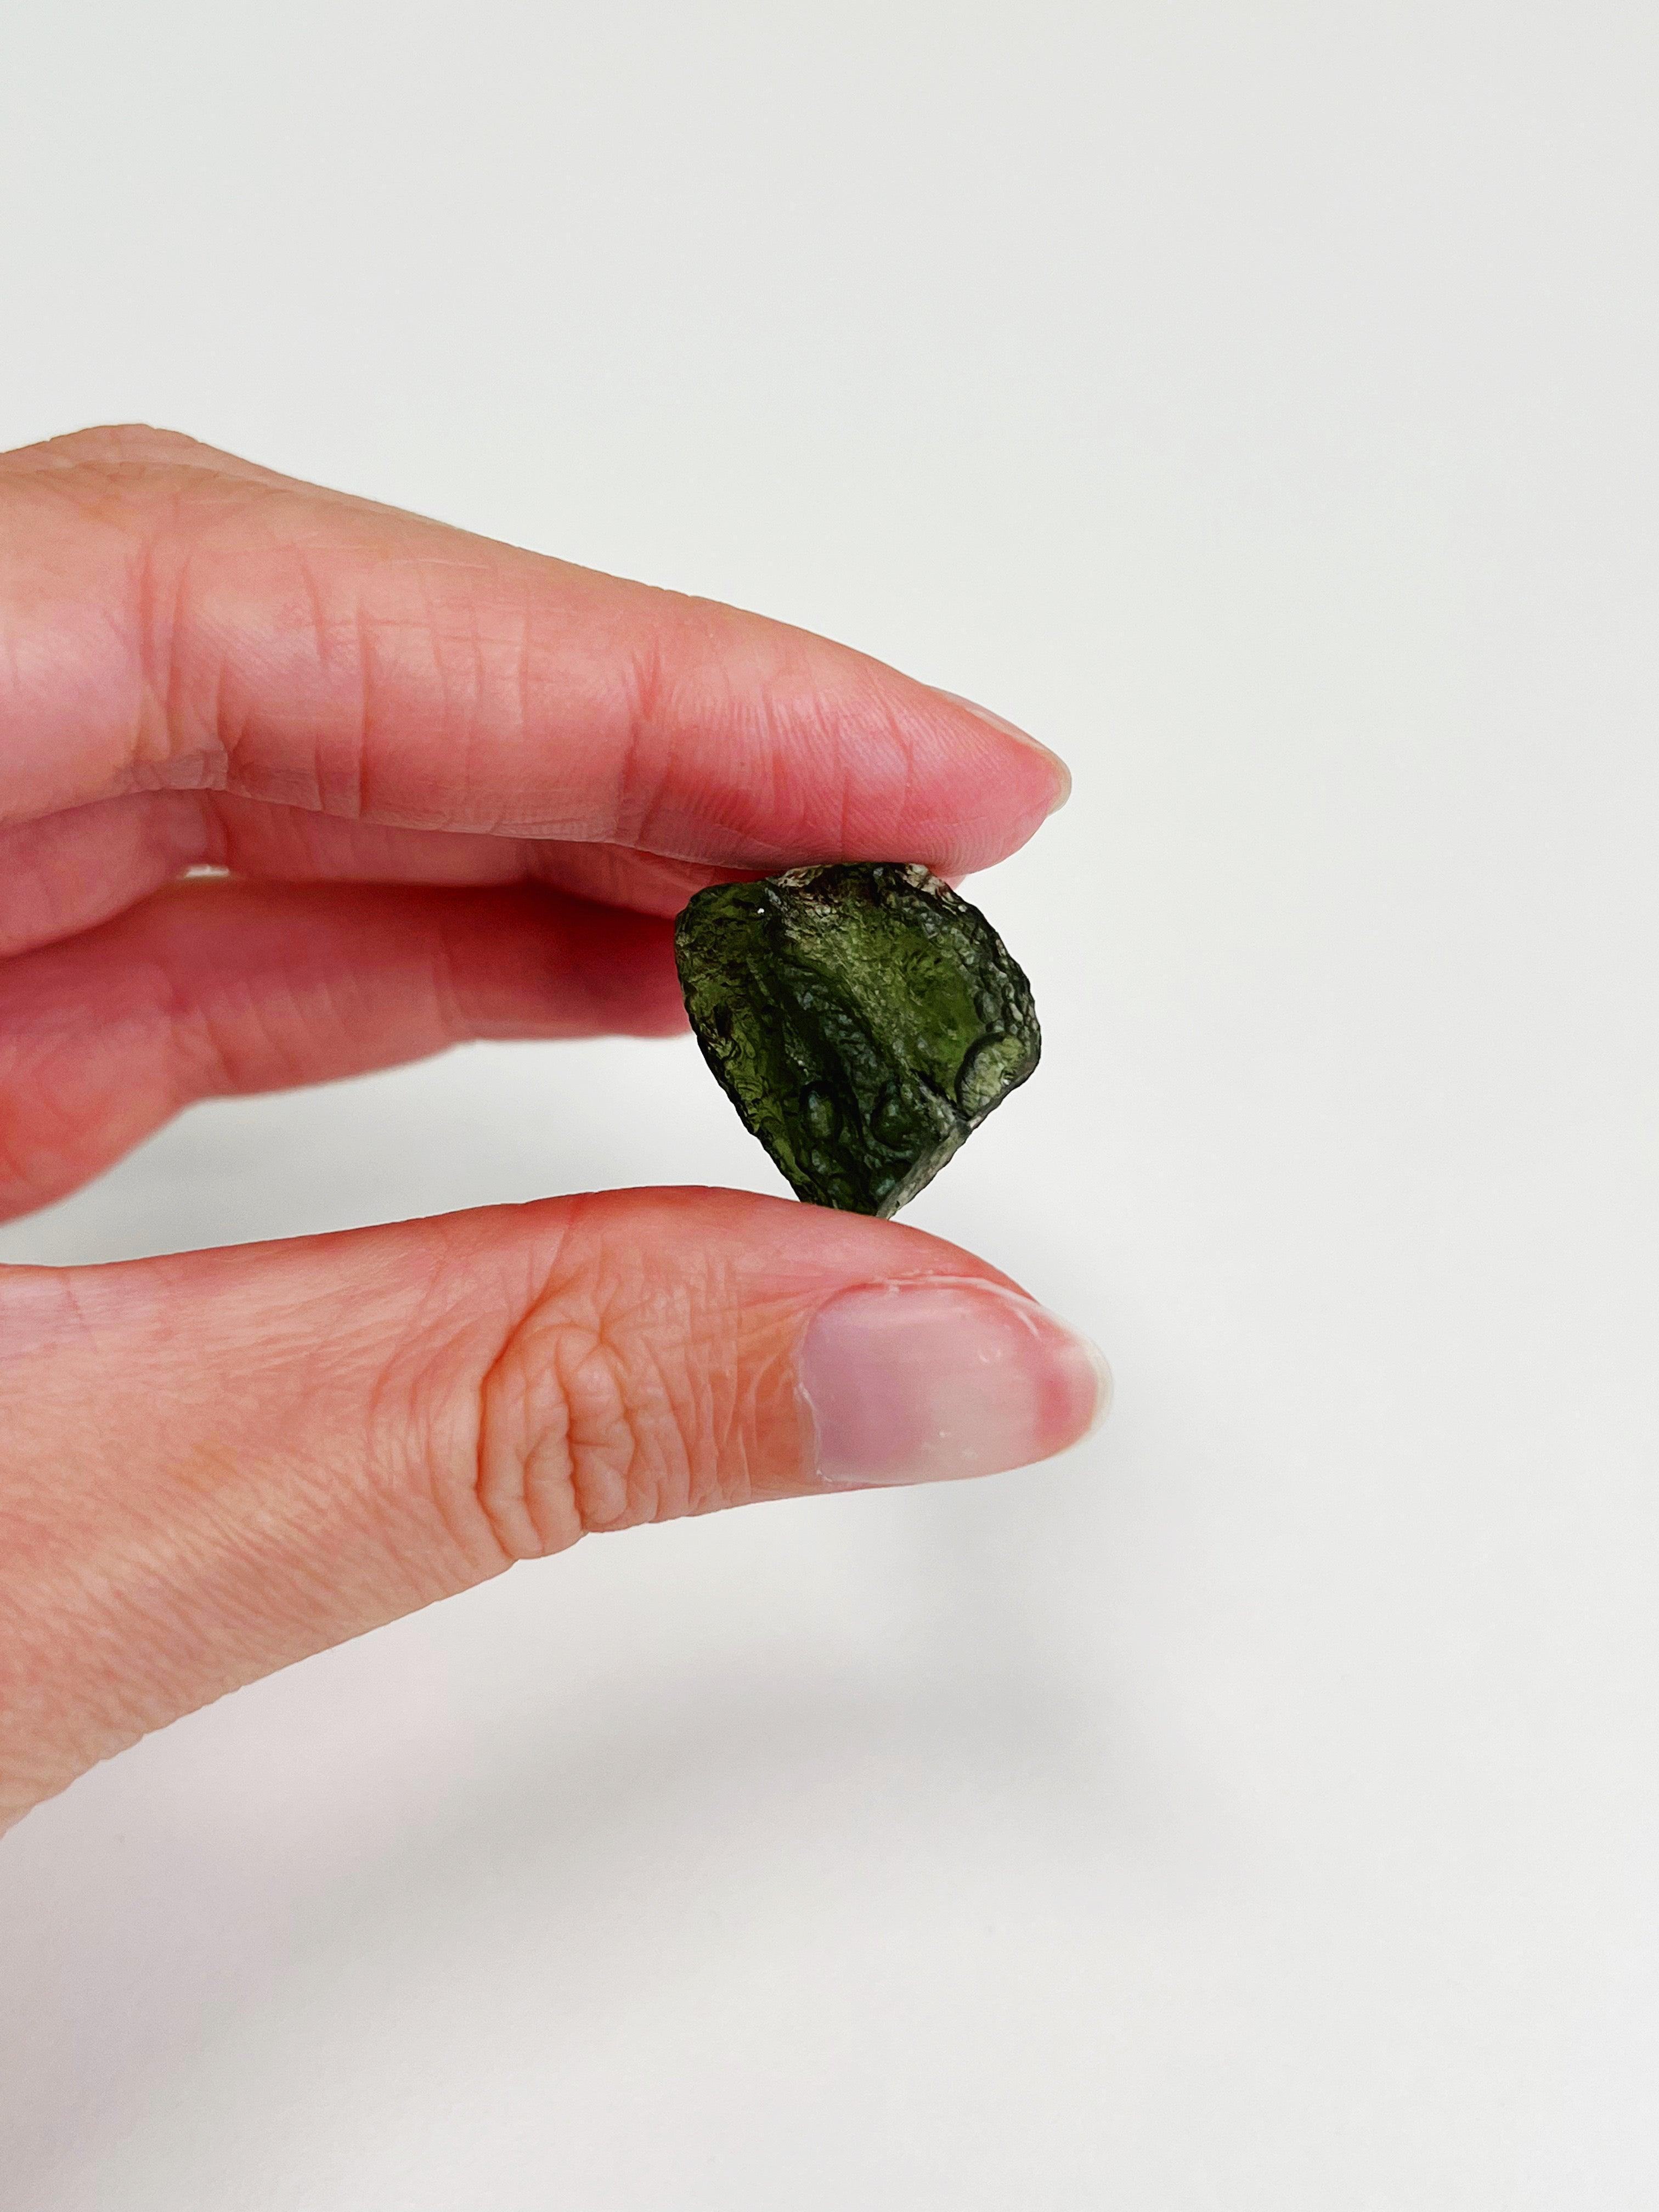 MOLDAVITE 7 - moldavite, tektite - The Mineral Maven